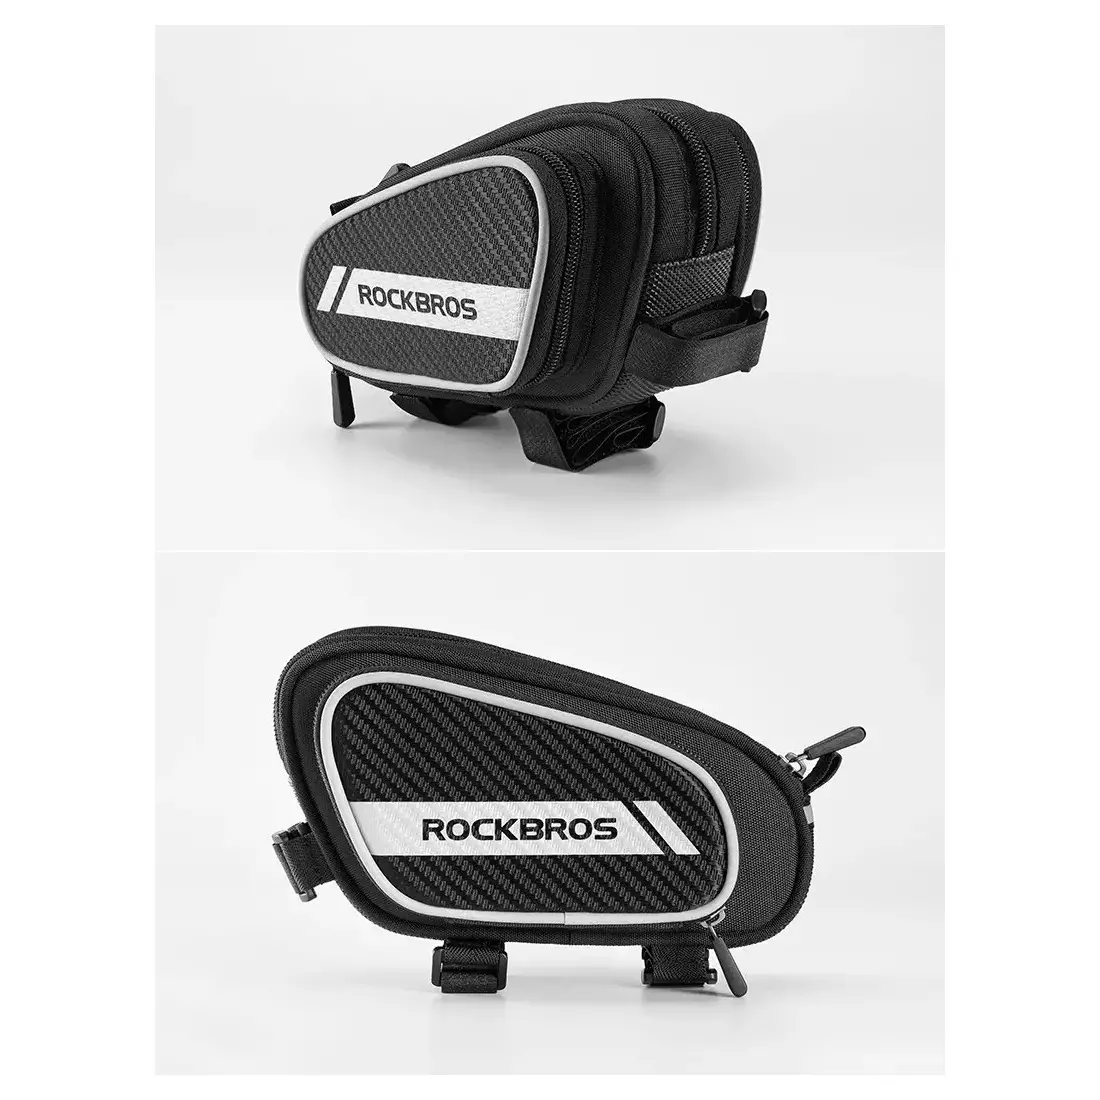 Rockbros bike bag / pannier under frame 1,8l black 006-1BK